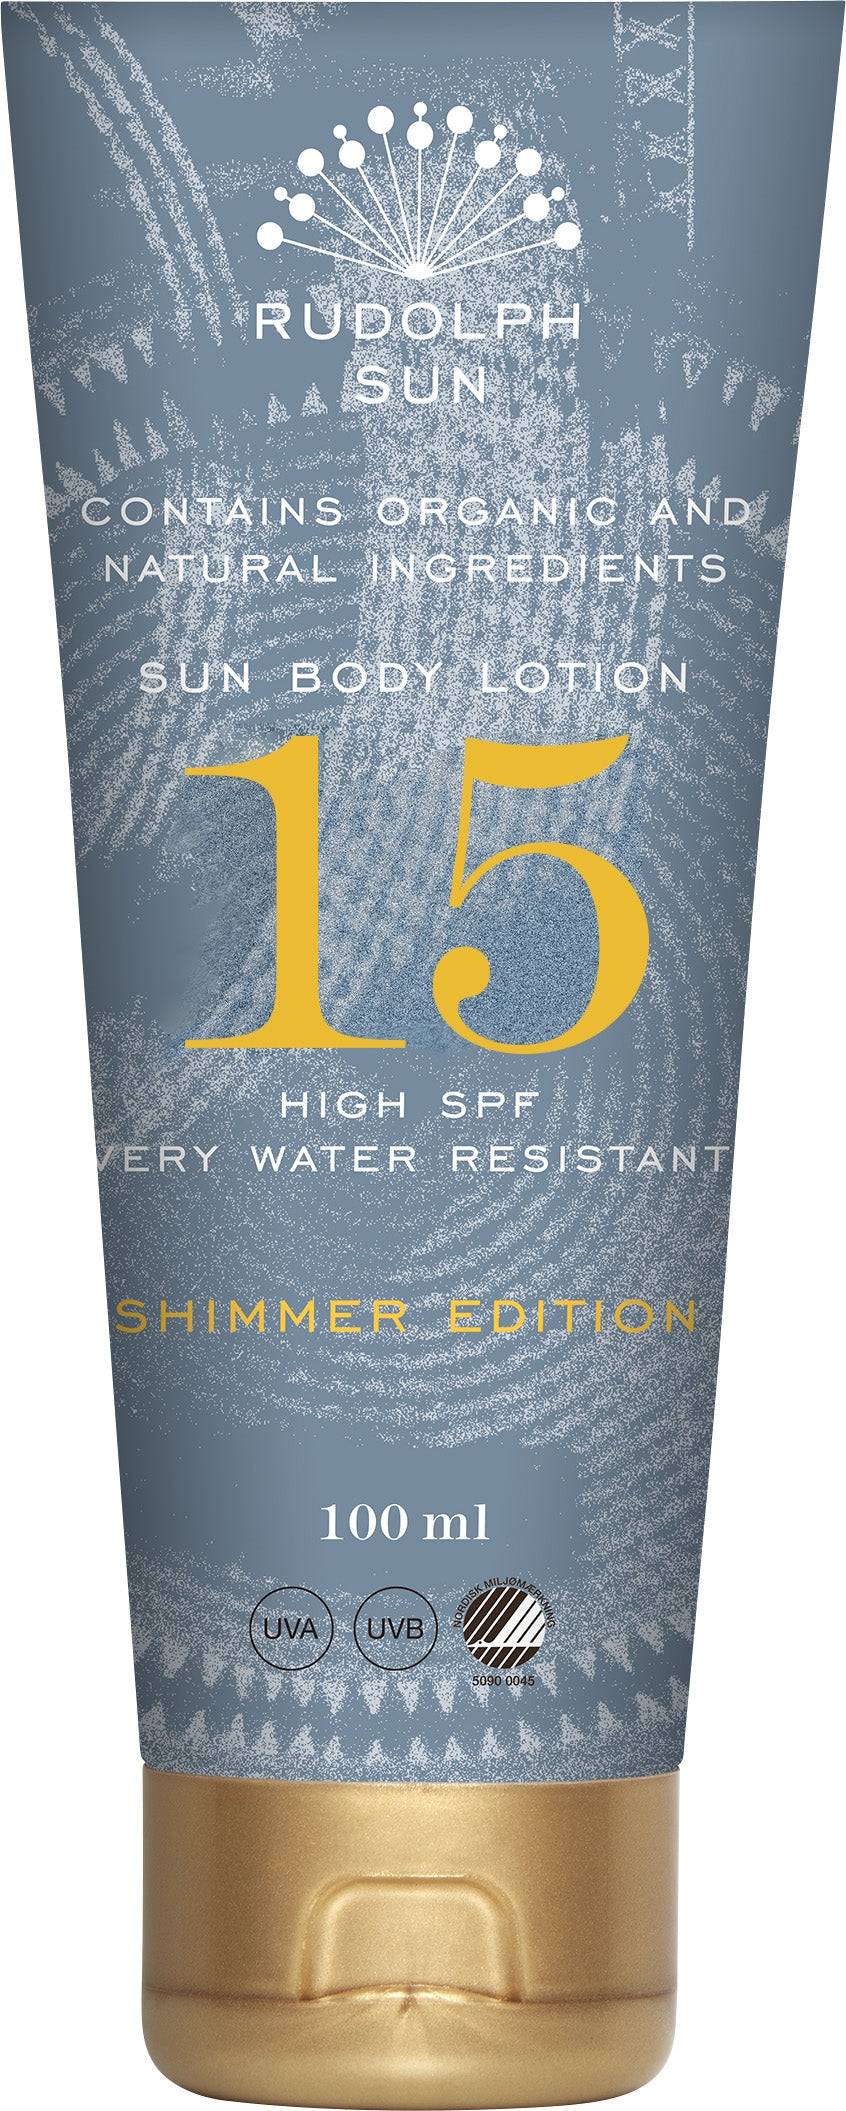 Rudolph Sun - Sun Body Lotion Shimmer Edition spf 15